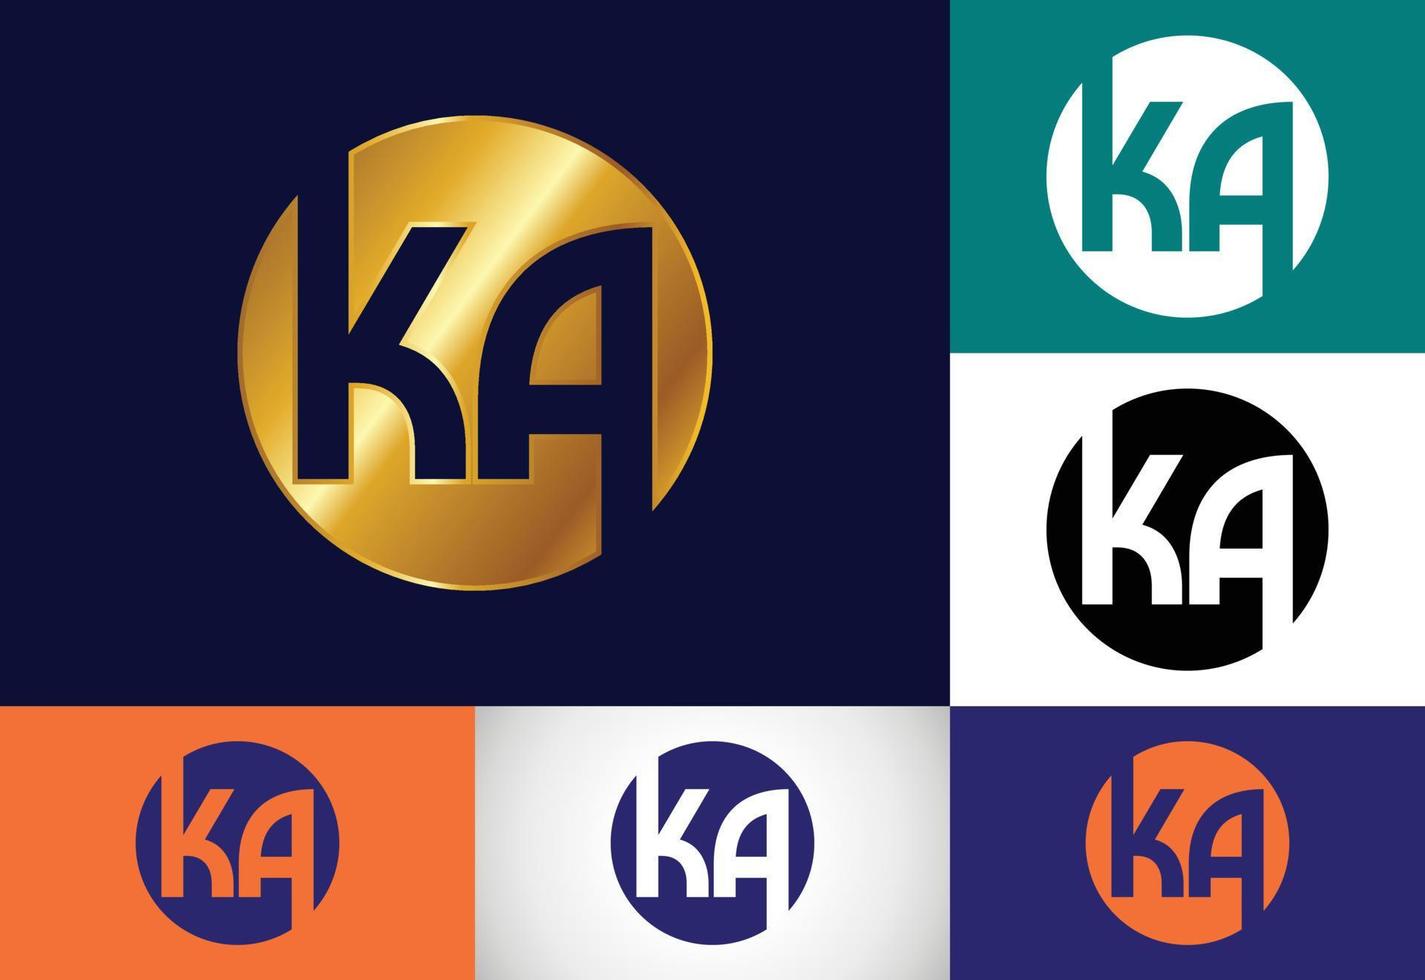 anfängliche monogrammbuchstabe ka logo design vektorvorlage. k-Buchstaben-Logo-Design vektor